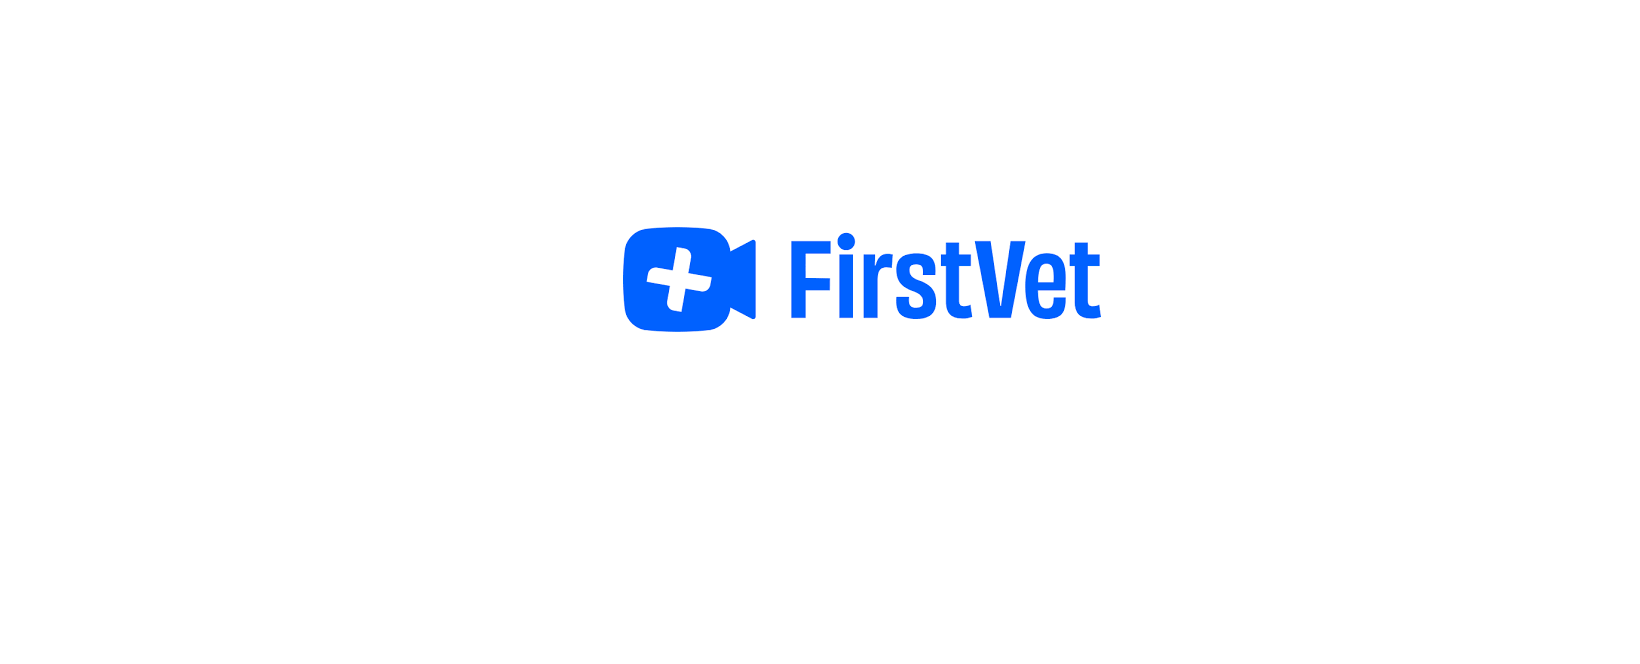 FirstVet Discount Code 2022